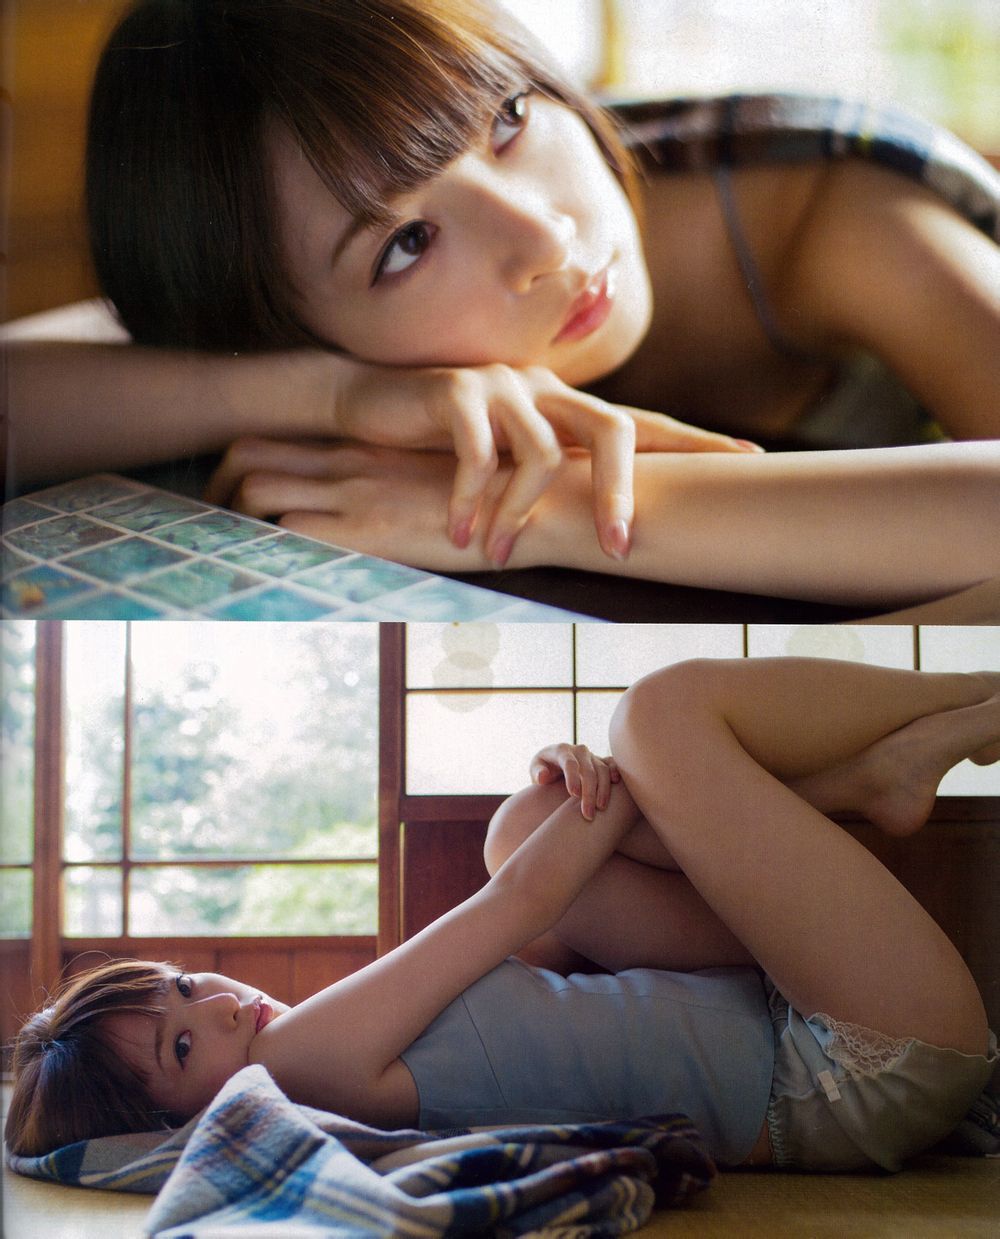 Nanami Hashimoto Sexy and Hottest Photos , Latest Pics